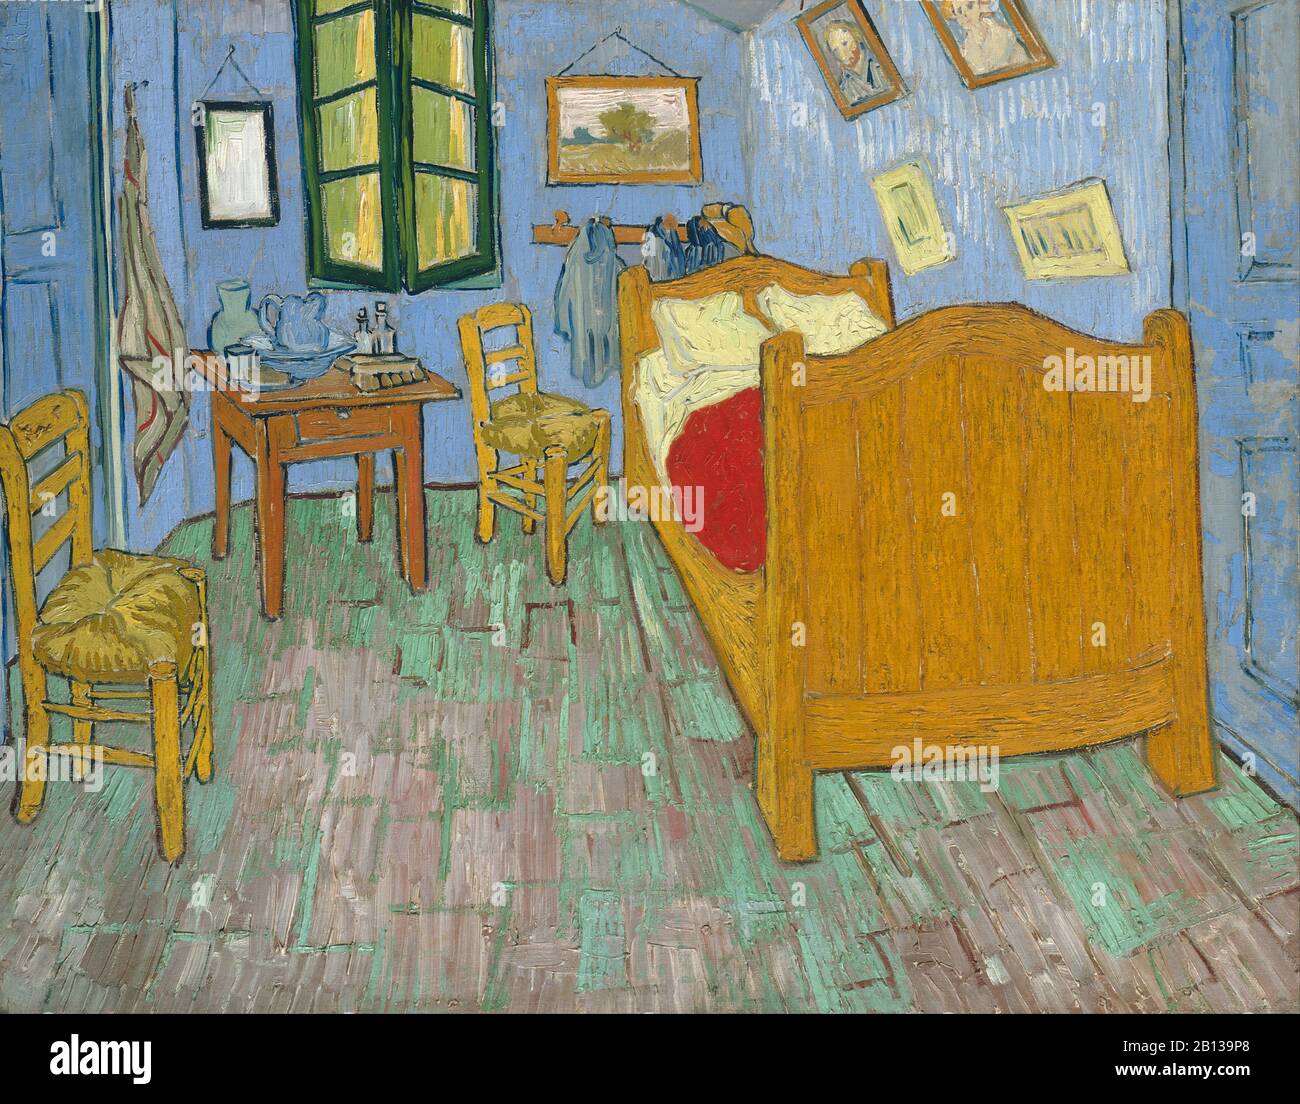 Dormitorio de Van Gogh en Arles (el dormitorio), segunda (2 ª) versión, septiembre de 1889 pintura de Vincent van Gogh - muy alta resolución y calidad de imagen Foto de stock